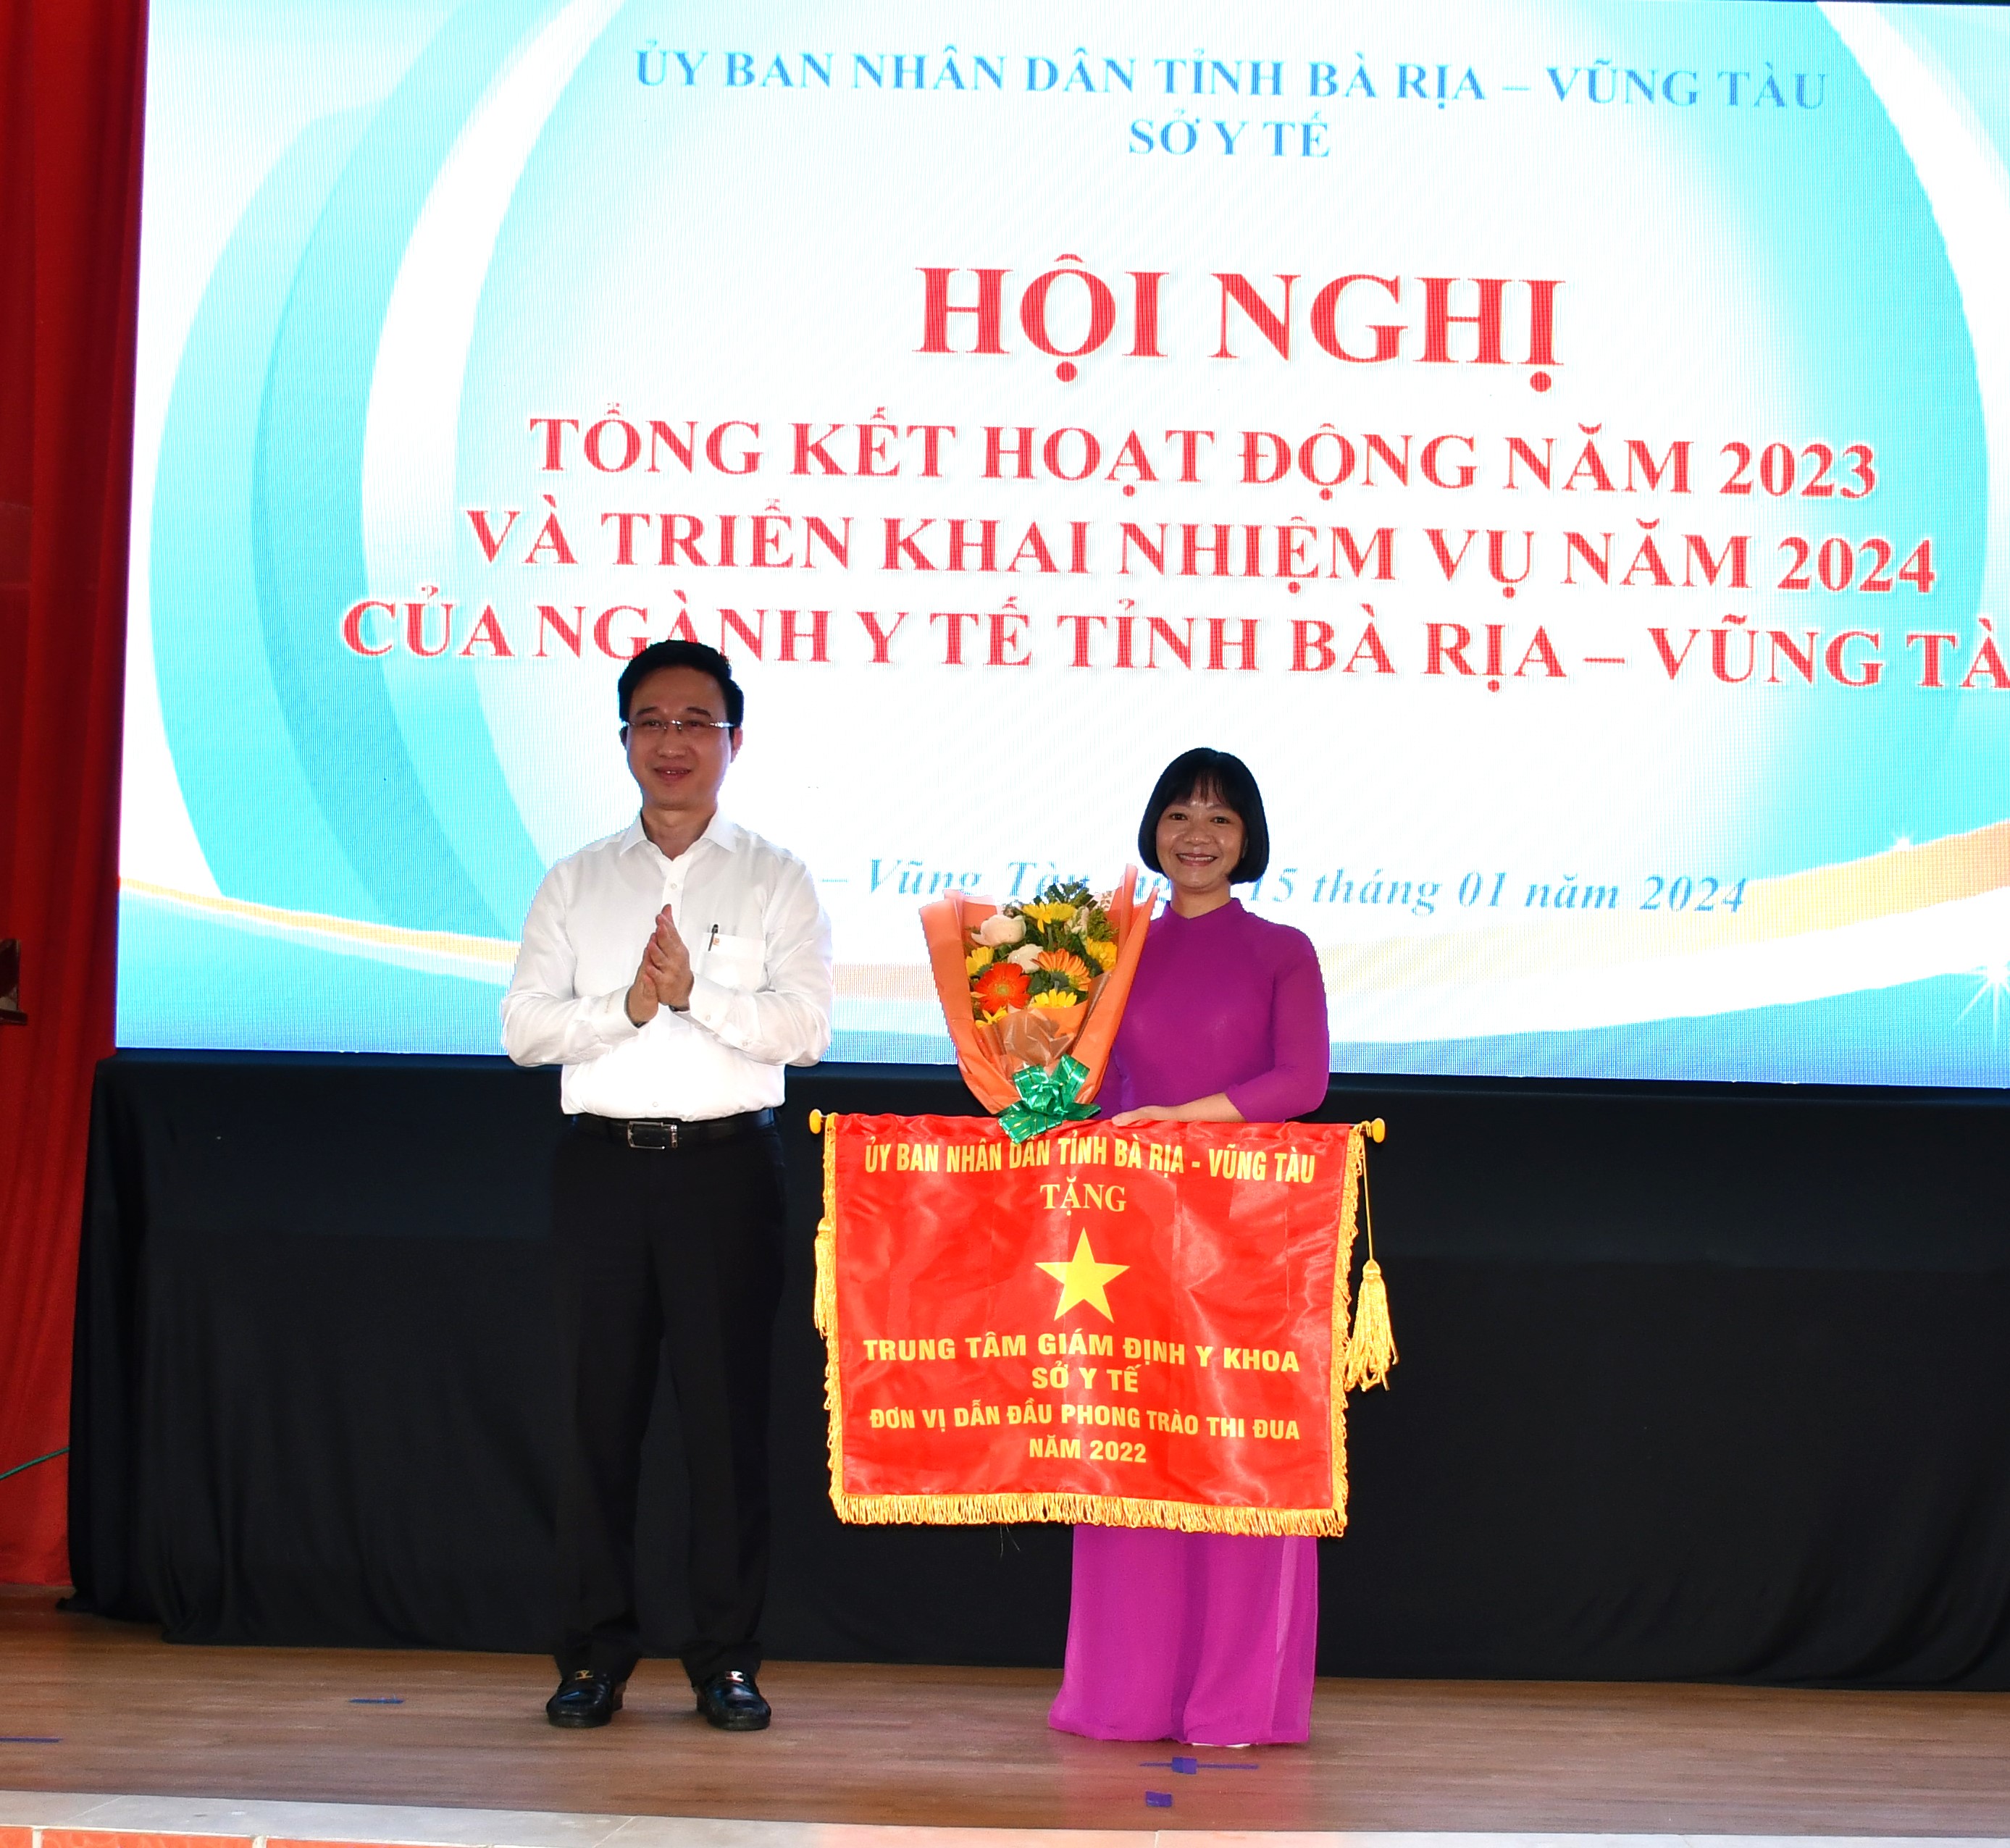 Ông Đặng Minh Thông, Phó Chủ tịch UBND tỉnh tặng Cờ thi đua  cho Trung tâm Giám định Y khoa đã có thành tích xuất sắc  trong phong trào thi đua năm 2022.